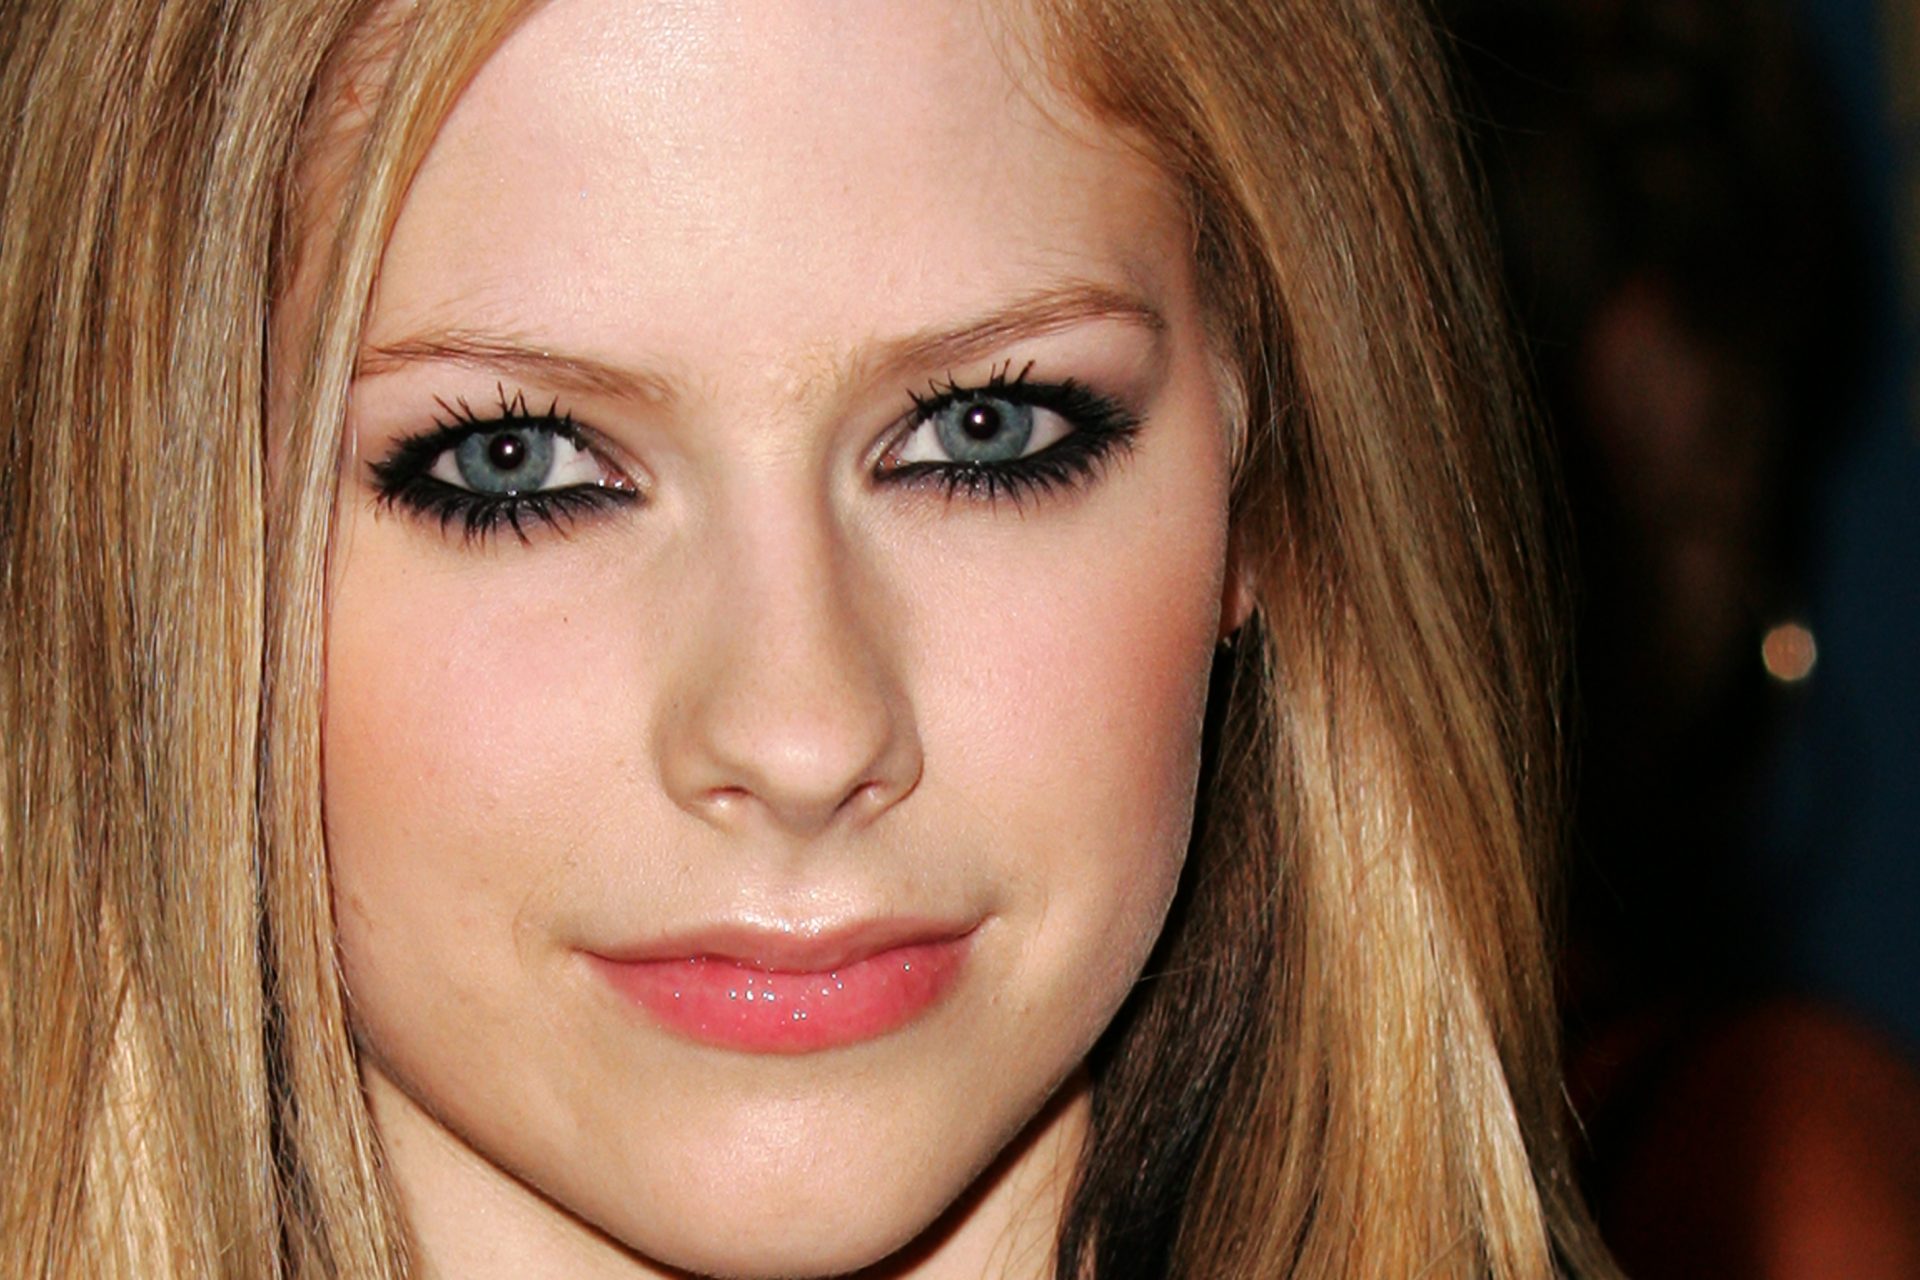 Selon une théorie du complot, la chanteuse Avril Lavigne serait morte en 2003